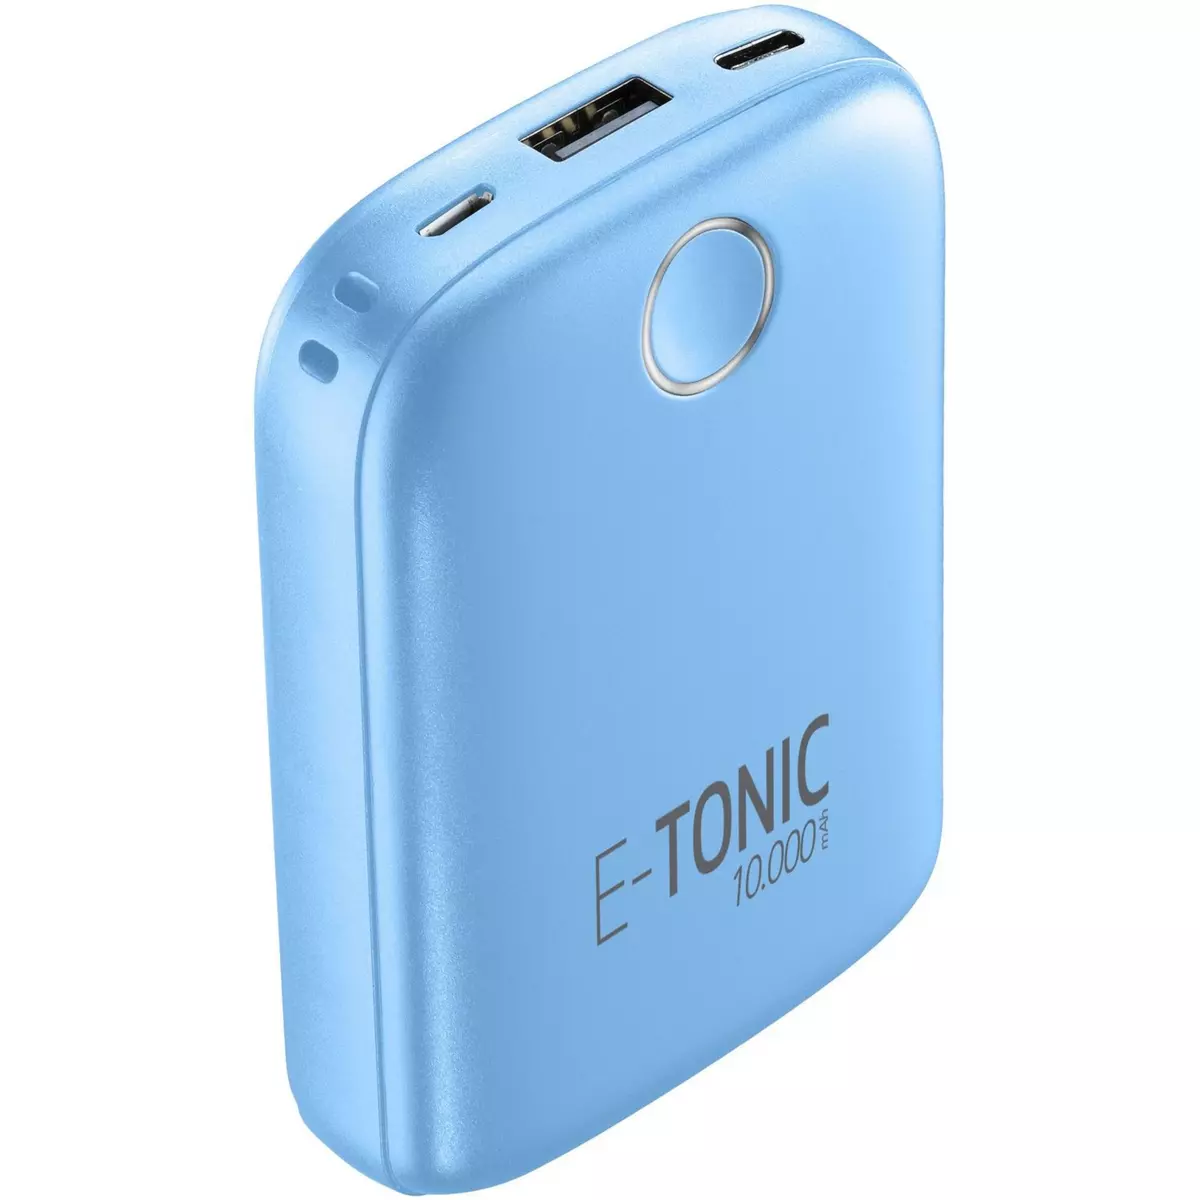 CELLULARLINE Batterie de secours 10000 mAh E-Tonic - Bleu